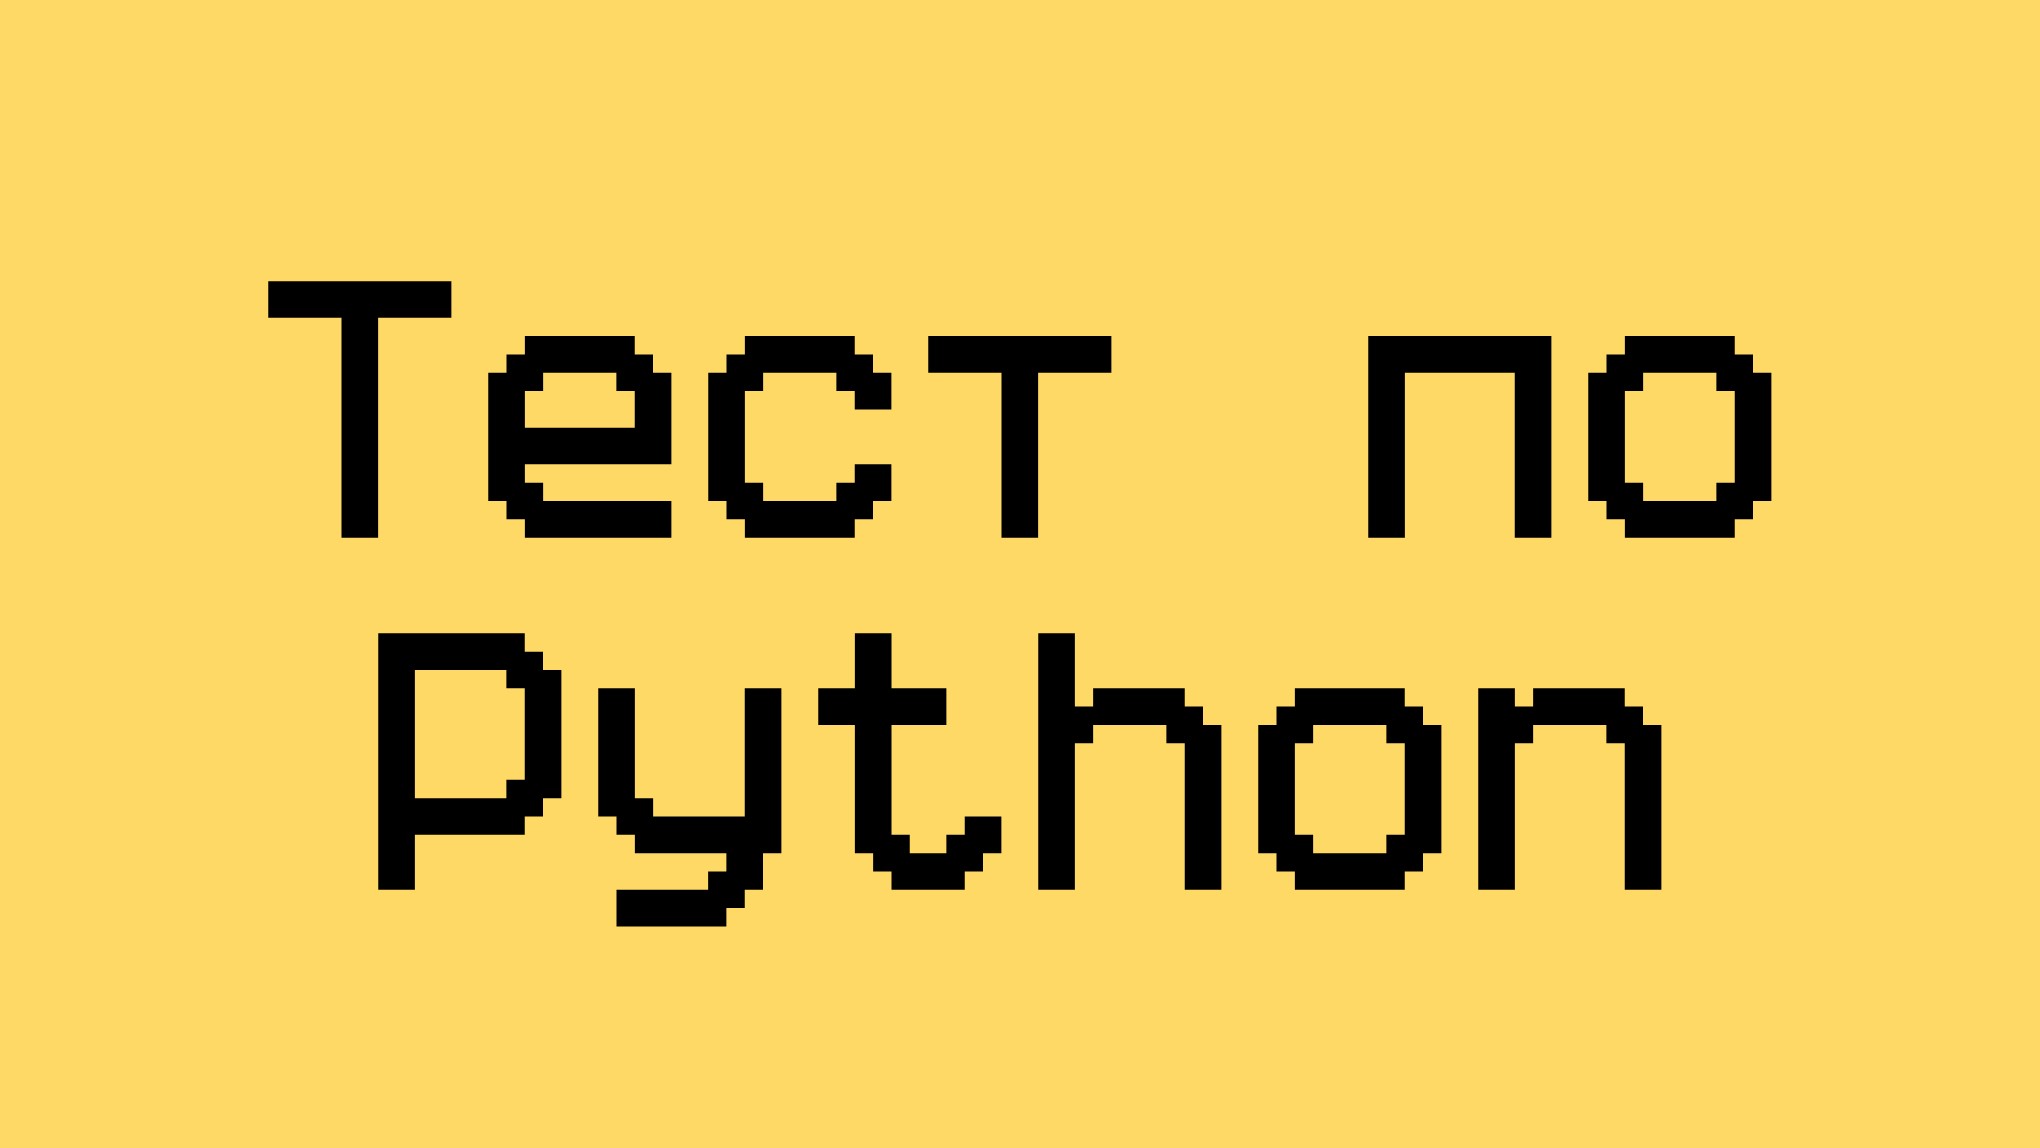 Тест: Проверка знаний по языку программирования Python – Как открыть и прочитать файл на Питон